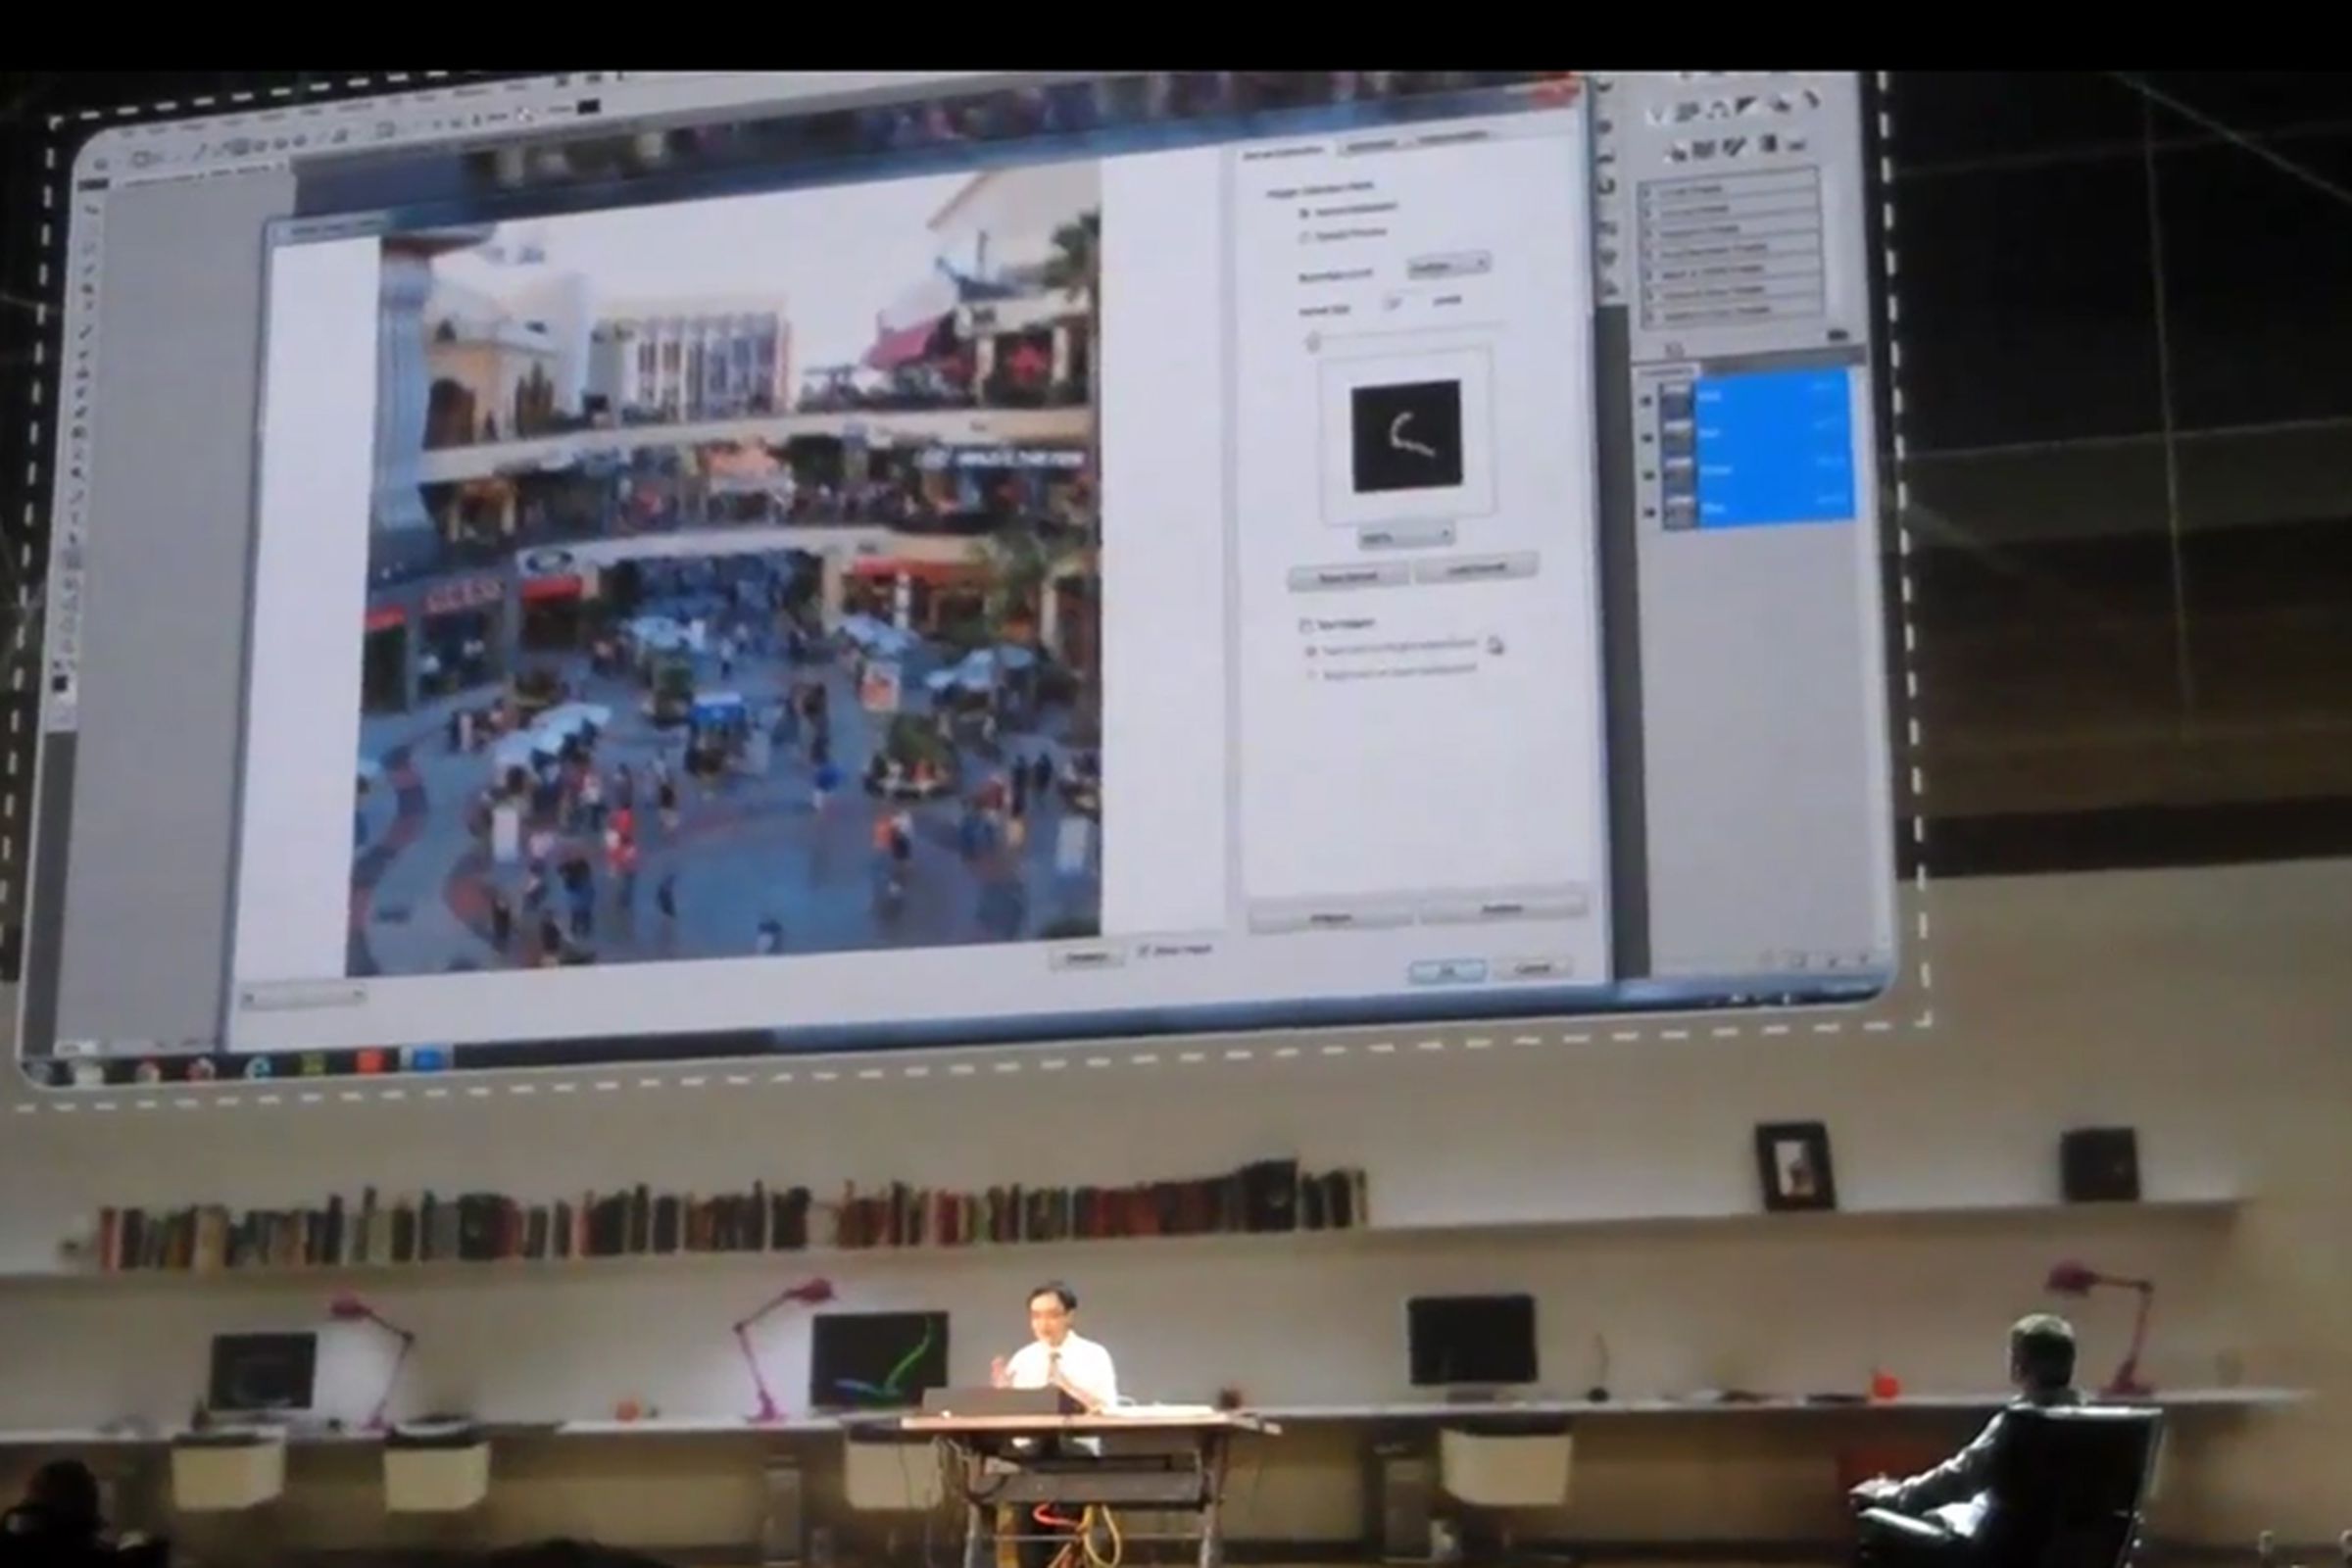 Image Deblurring at Adobe MAX 2011